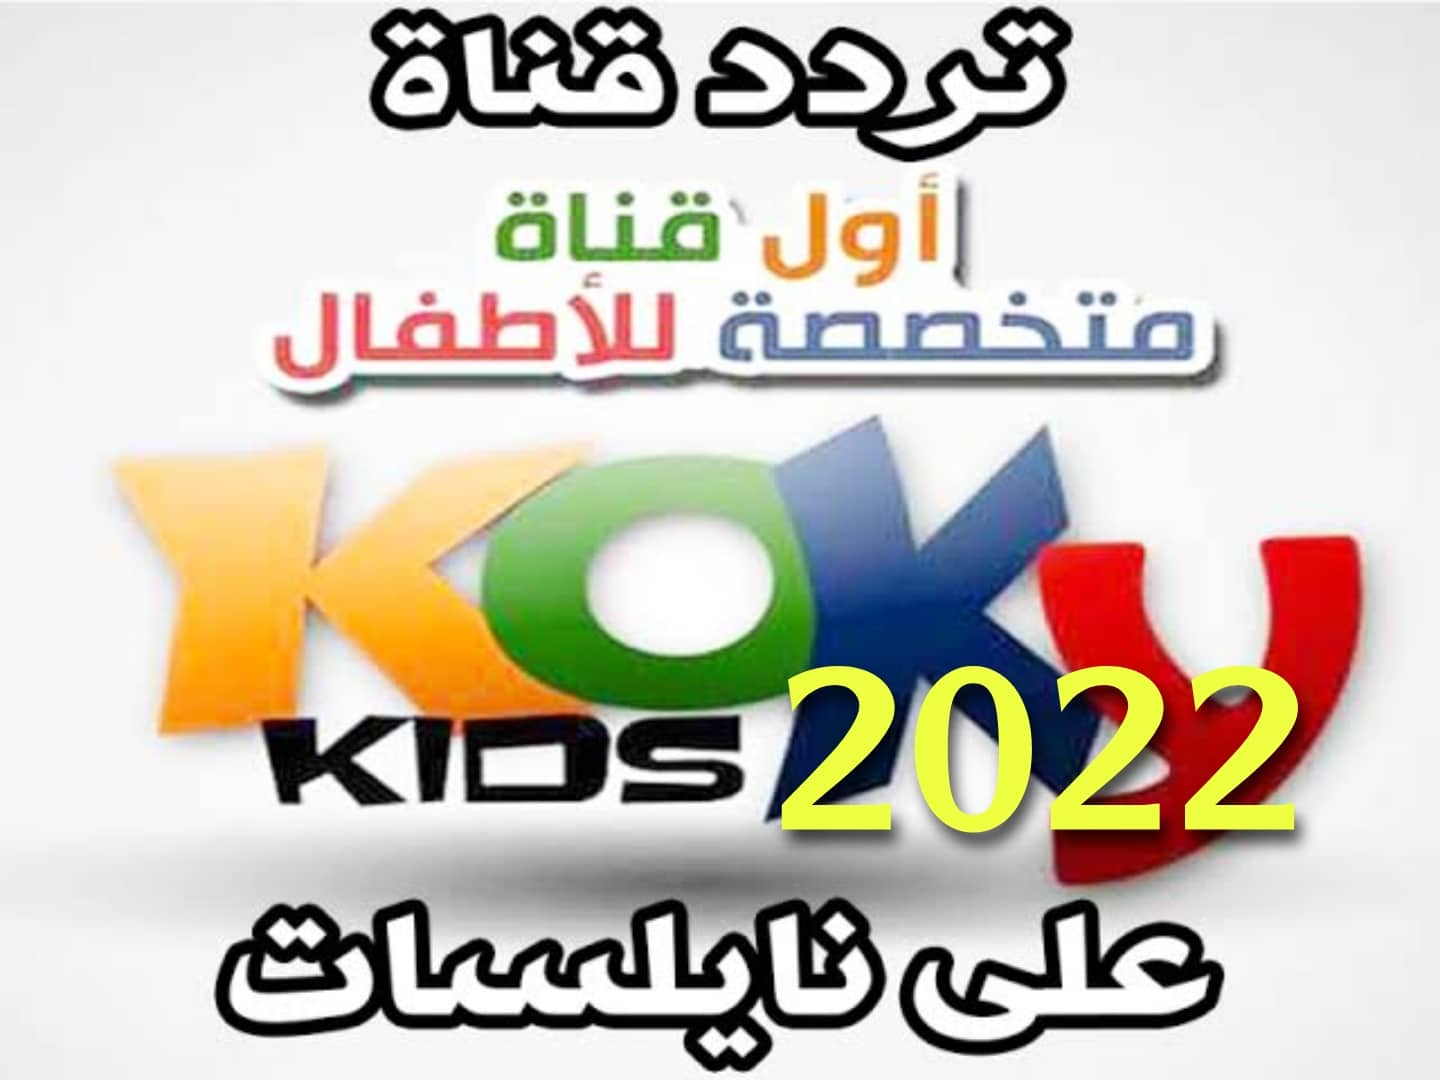 فرحي أطفالك واشغلي وقتهم .. تردد قناة كوكي كيدز 2022 على النايل سات Koky Kids Channel الآن